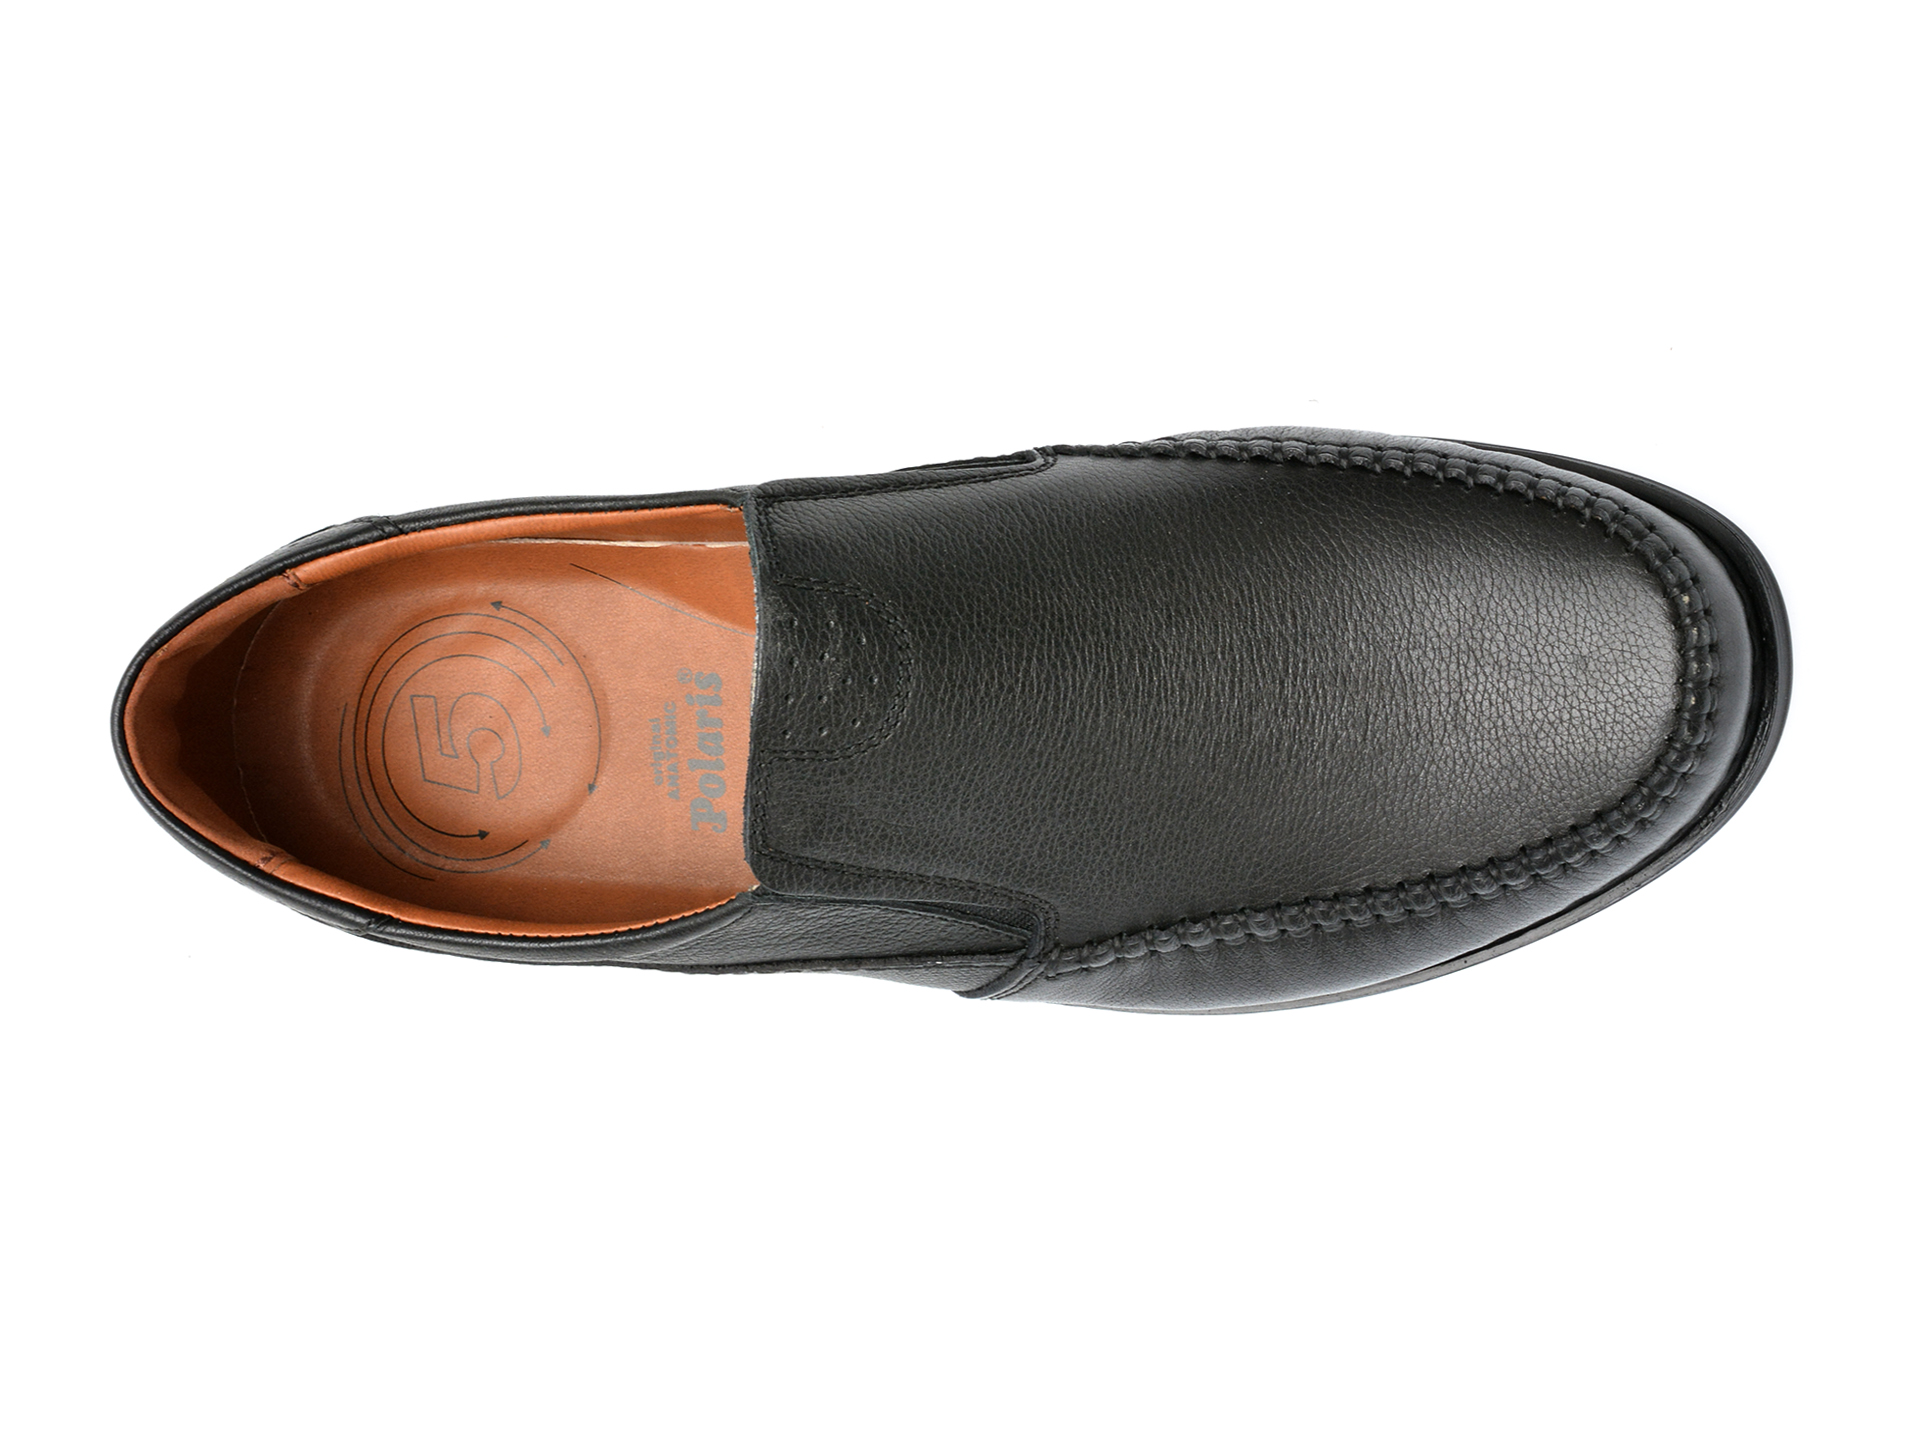 Poze Pantofi POLARIS 5 NOKTA negri, 105517, din piele naturala otter.ro